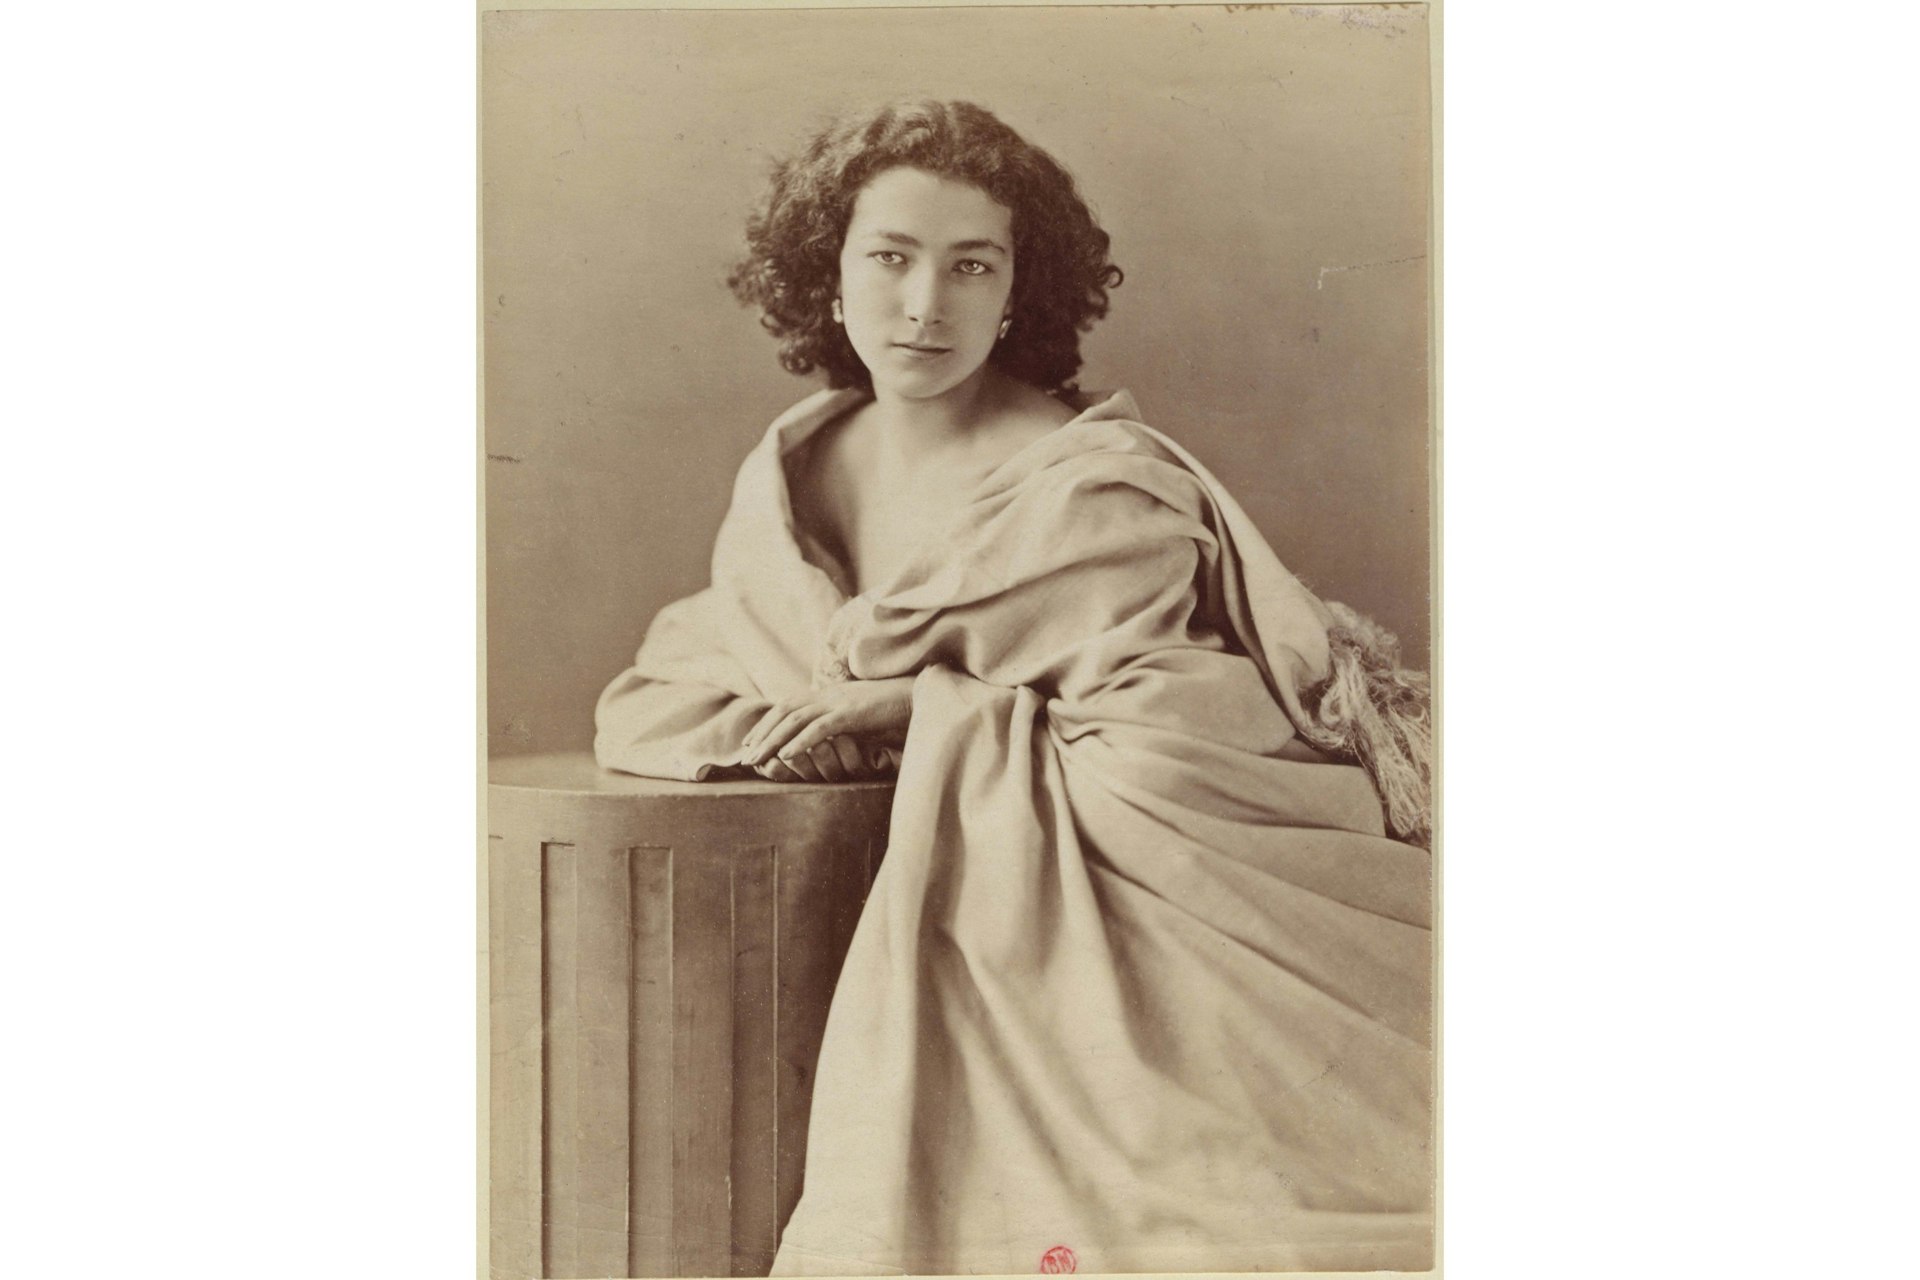 Félix Nadar, “Sarah Bernhardt” © courtesy Bibliothèque Nationale de France